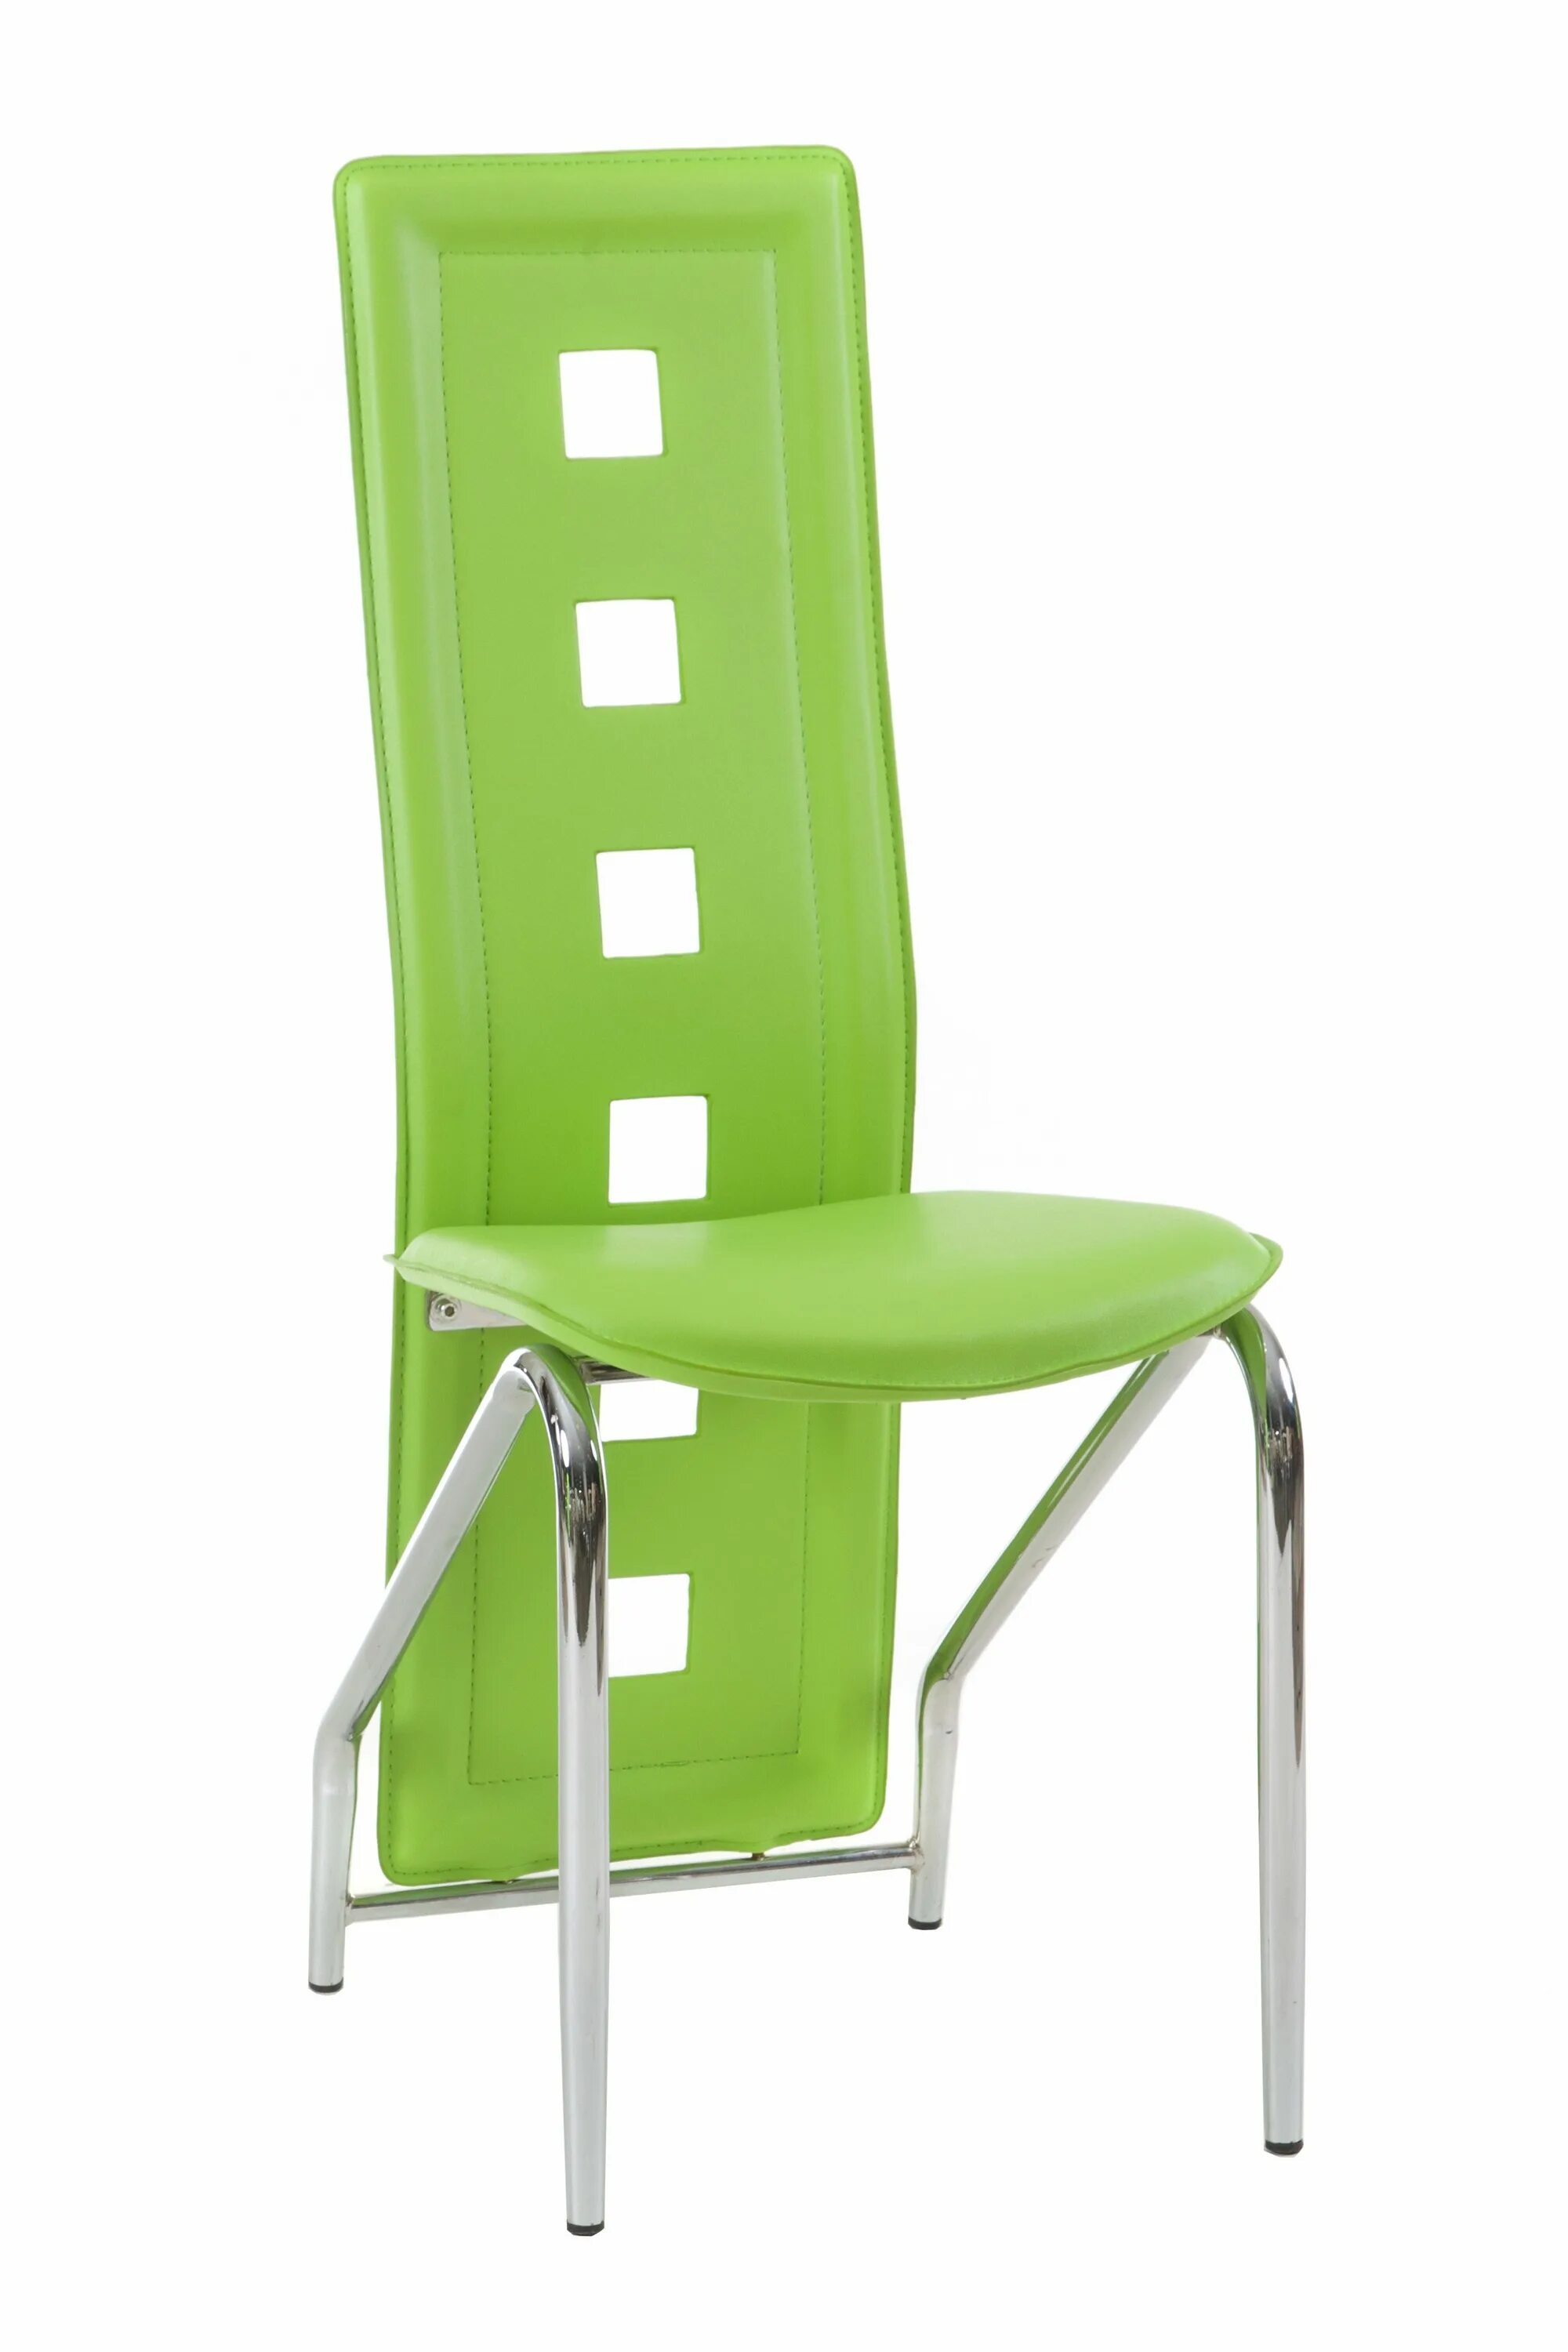 Стулья для кухни. Салатовые стулья для кухни. Стул кухонный зеленый. Кухня с зелеными стульями.